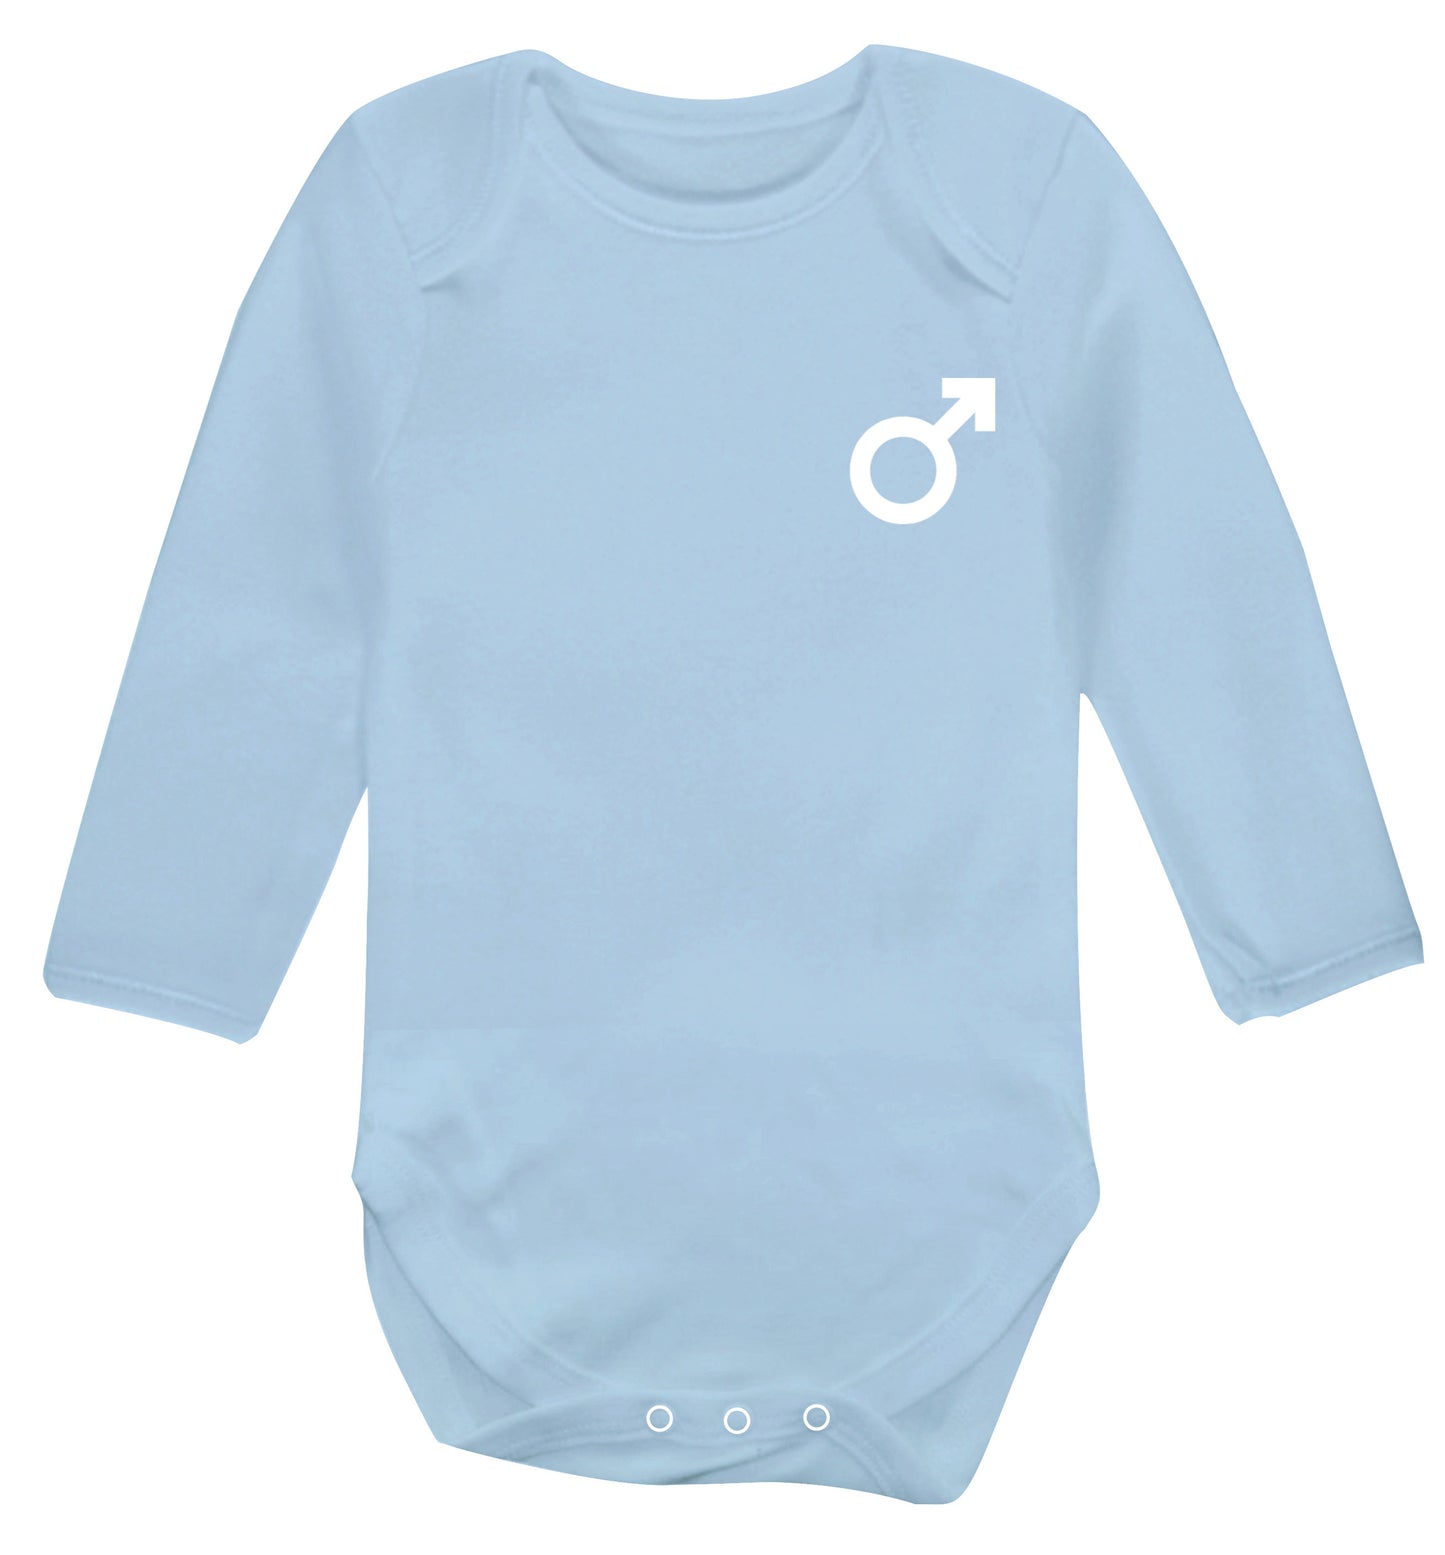 Male symbol pocket Baby Vest long sleeved pale blue 6-12 months